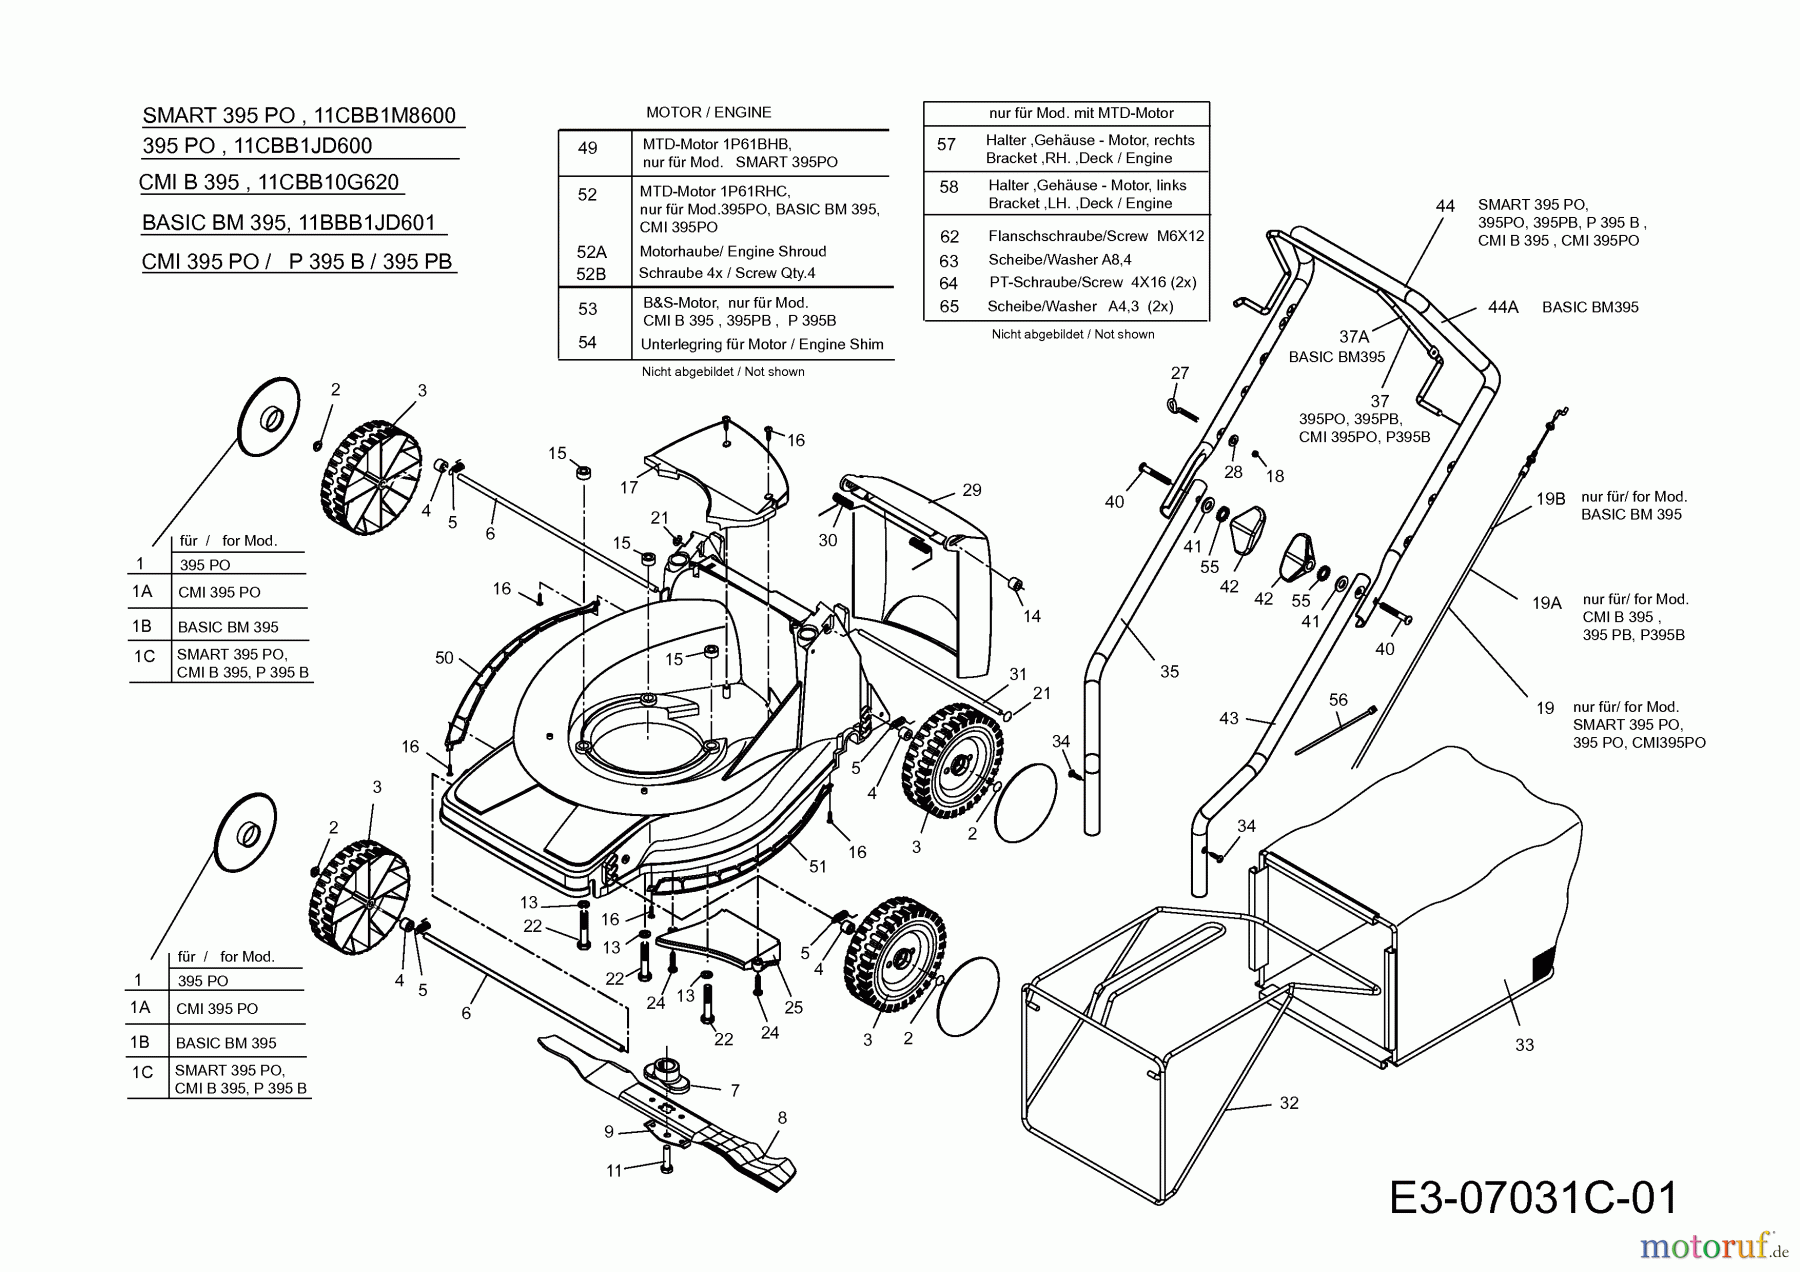  Basic Motormäher Basic BM 395 11BBB1JD601  (2013) Grundgerät